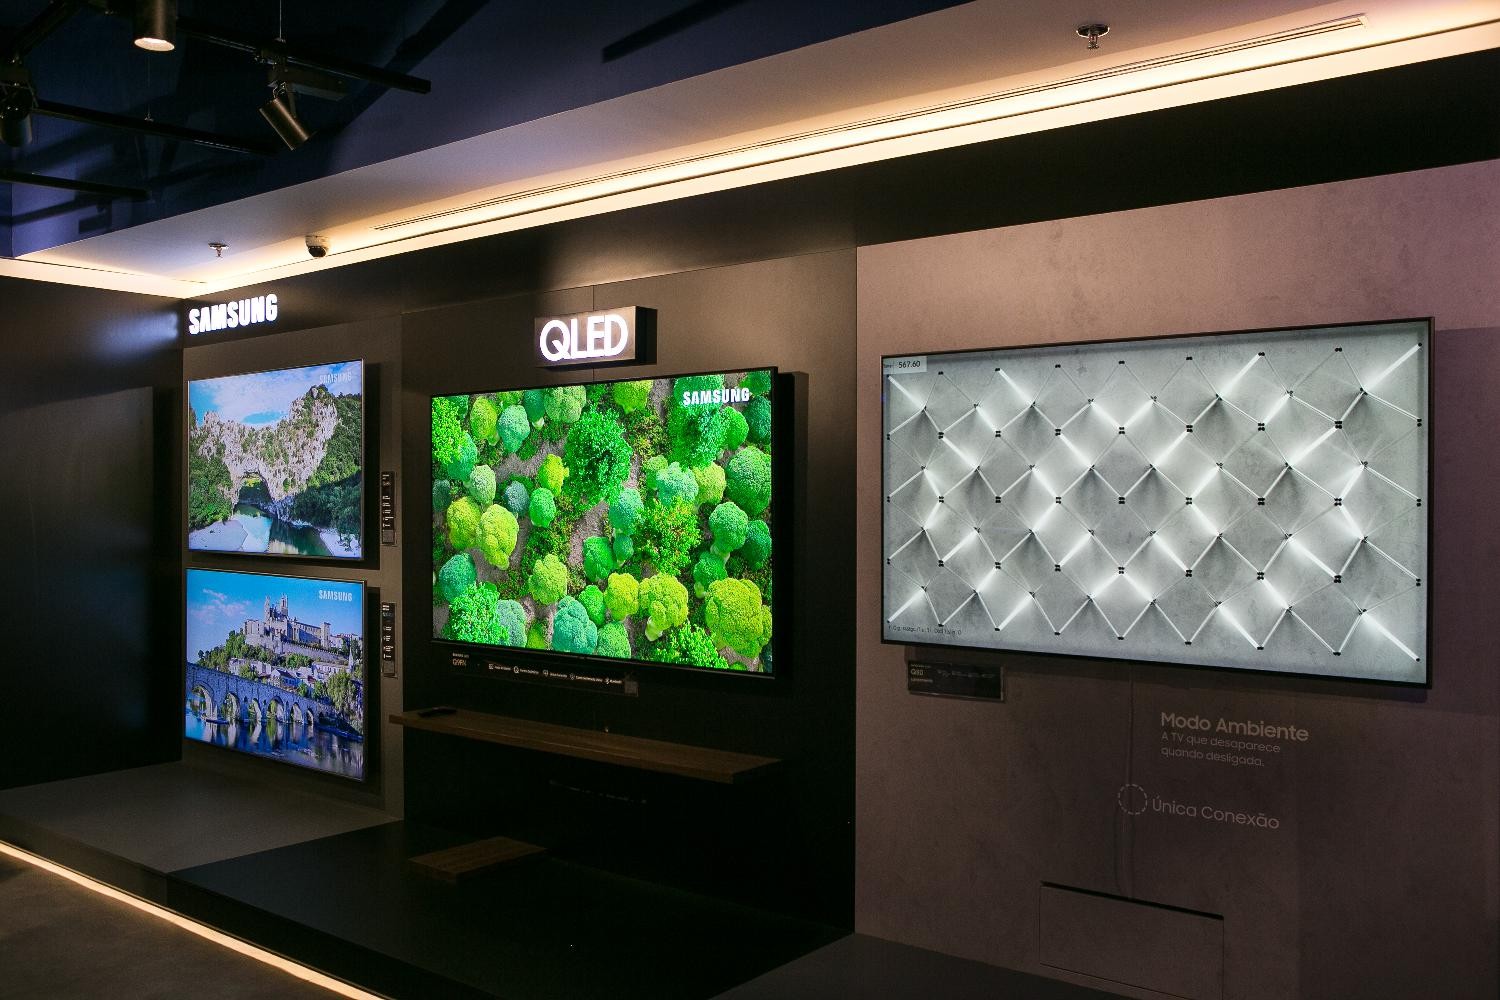 TVs Samsung com destaque para o modelo QLED K8, no centro, com 33 milhões de pixels 